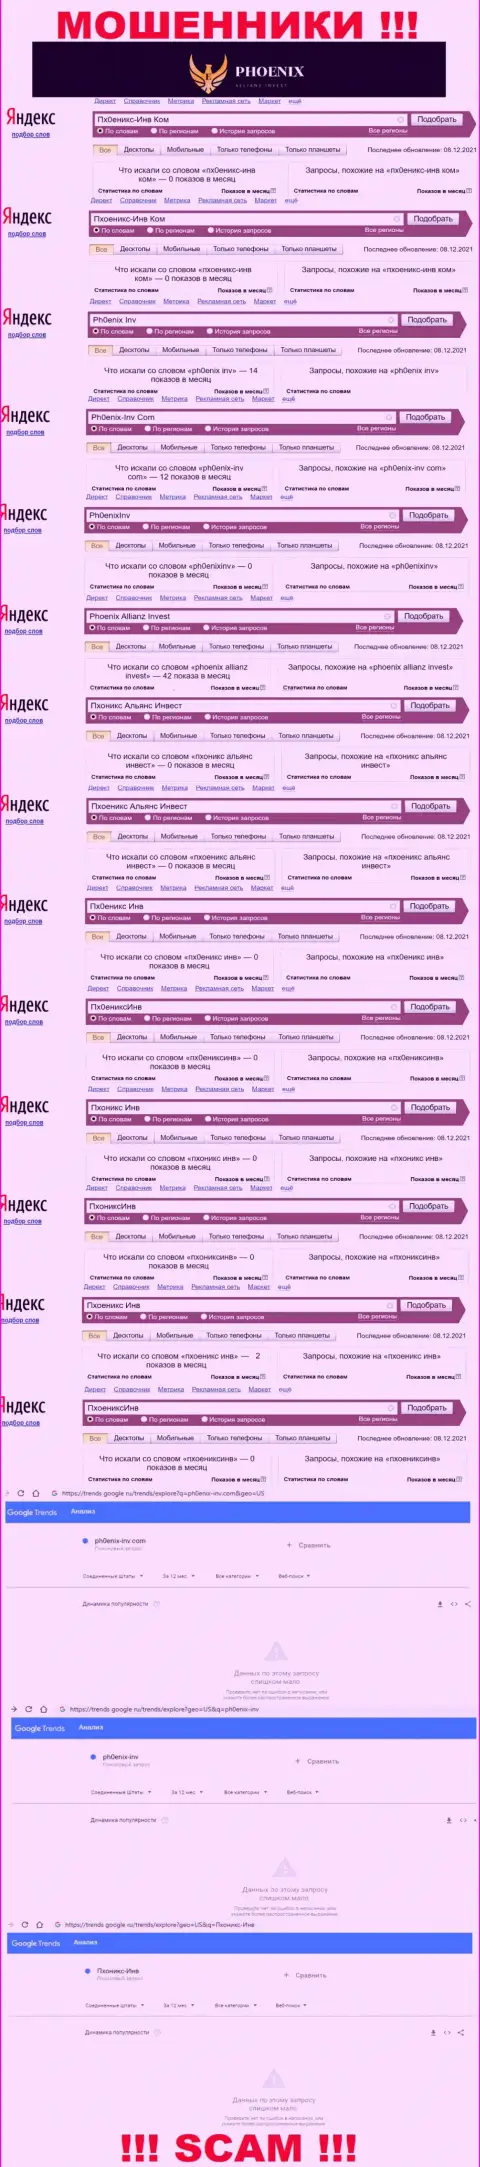 Скрин статистических показателей поисковых запросов по противозаконно действующей компании Пхоникс-Инв Ком